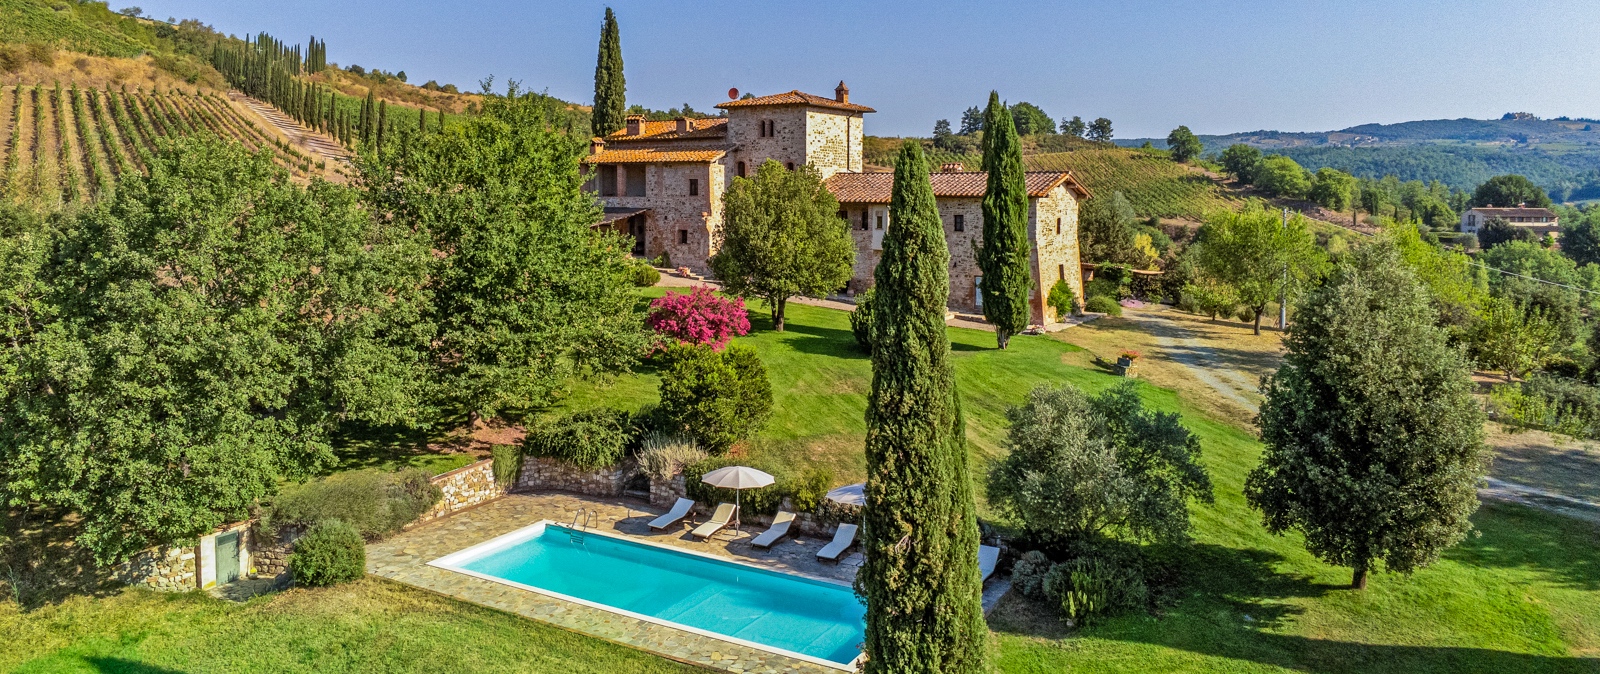 Cipresso | Tuscany Villas for rent | Haute Retreats